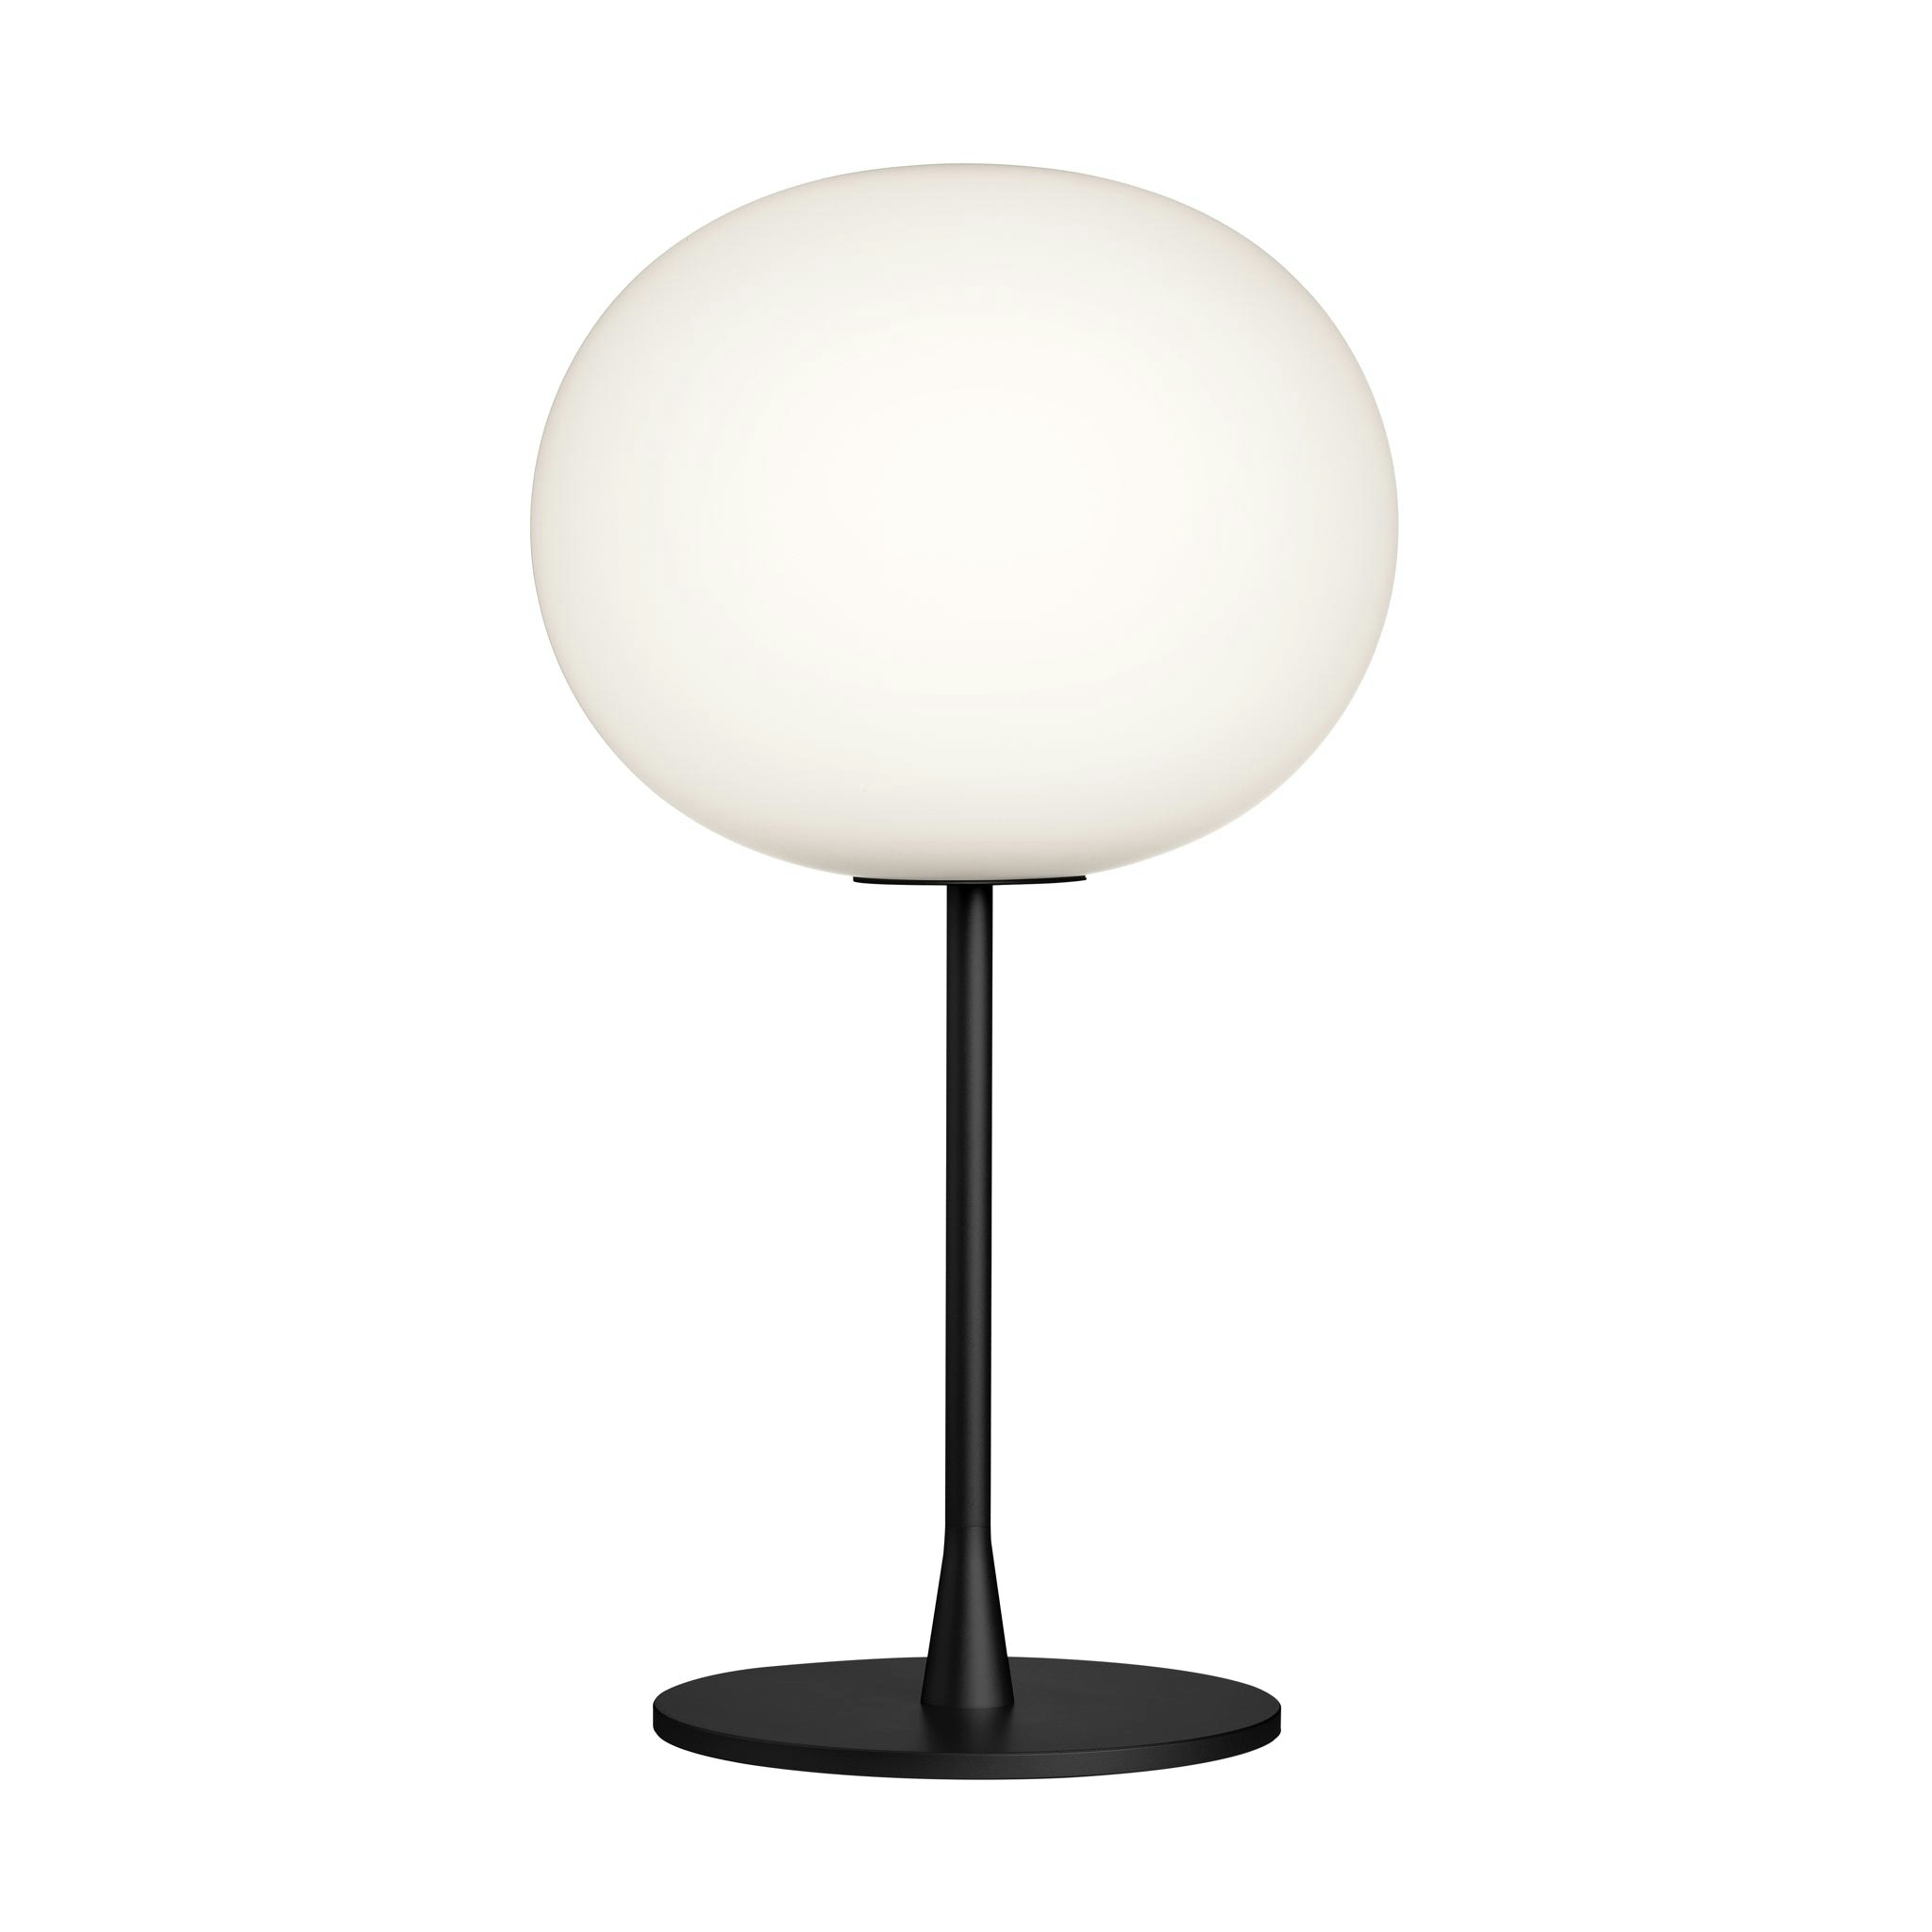 Glo Ball Matt Black Table Lamp by Jasper Morrison for Flos